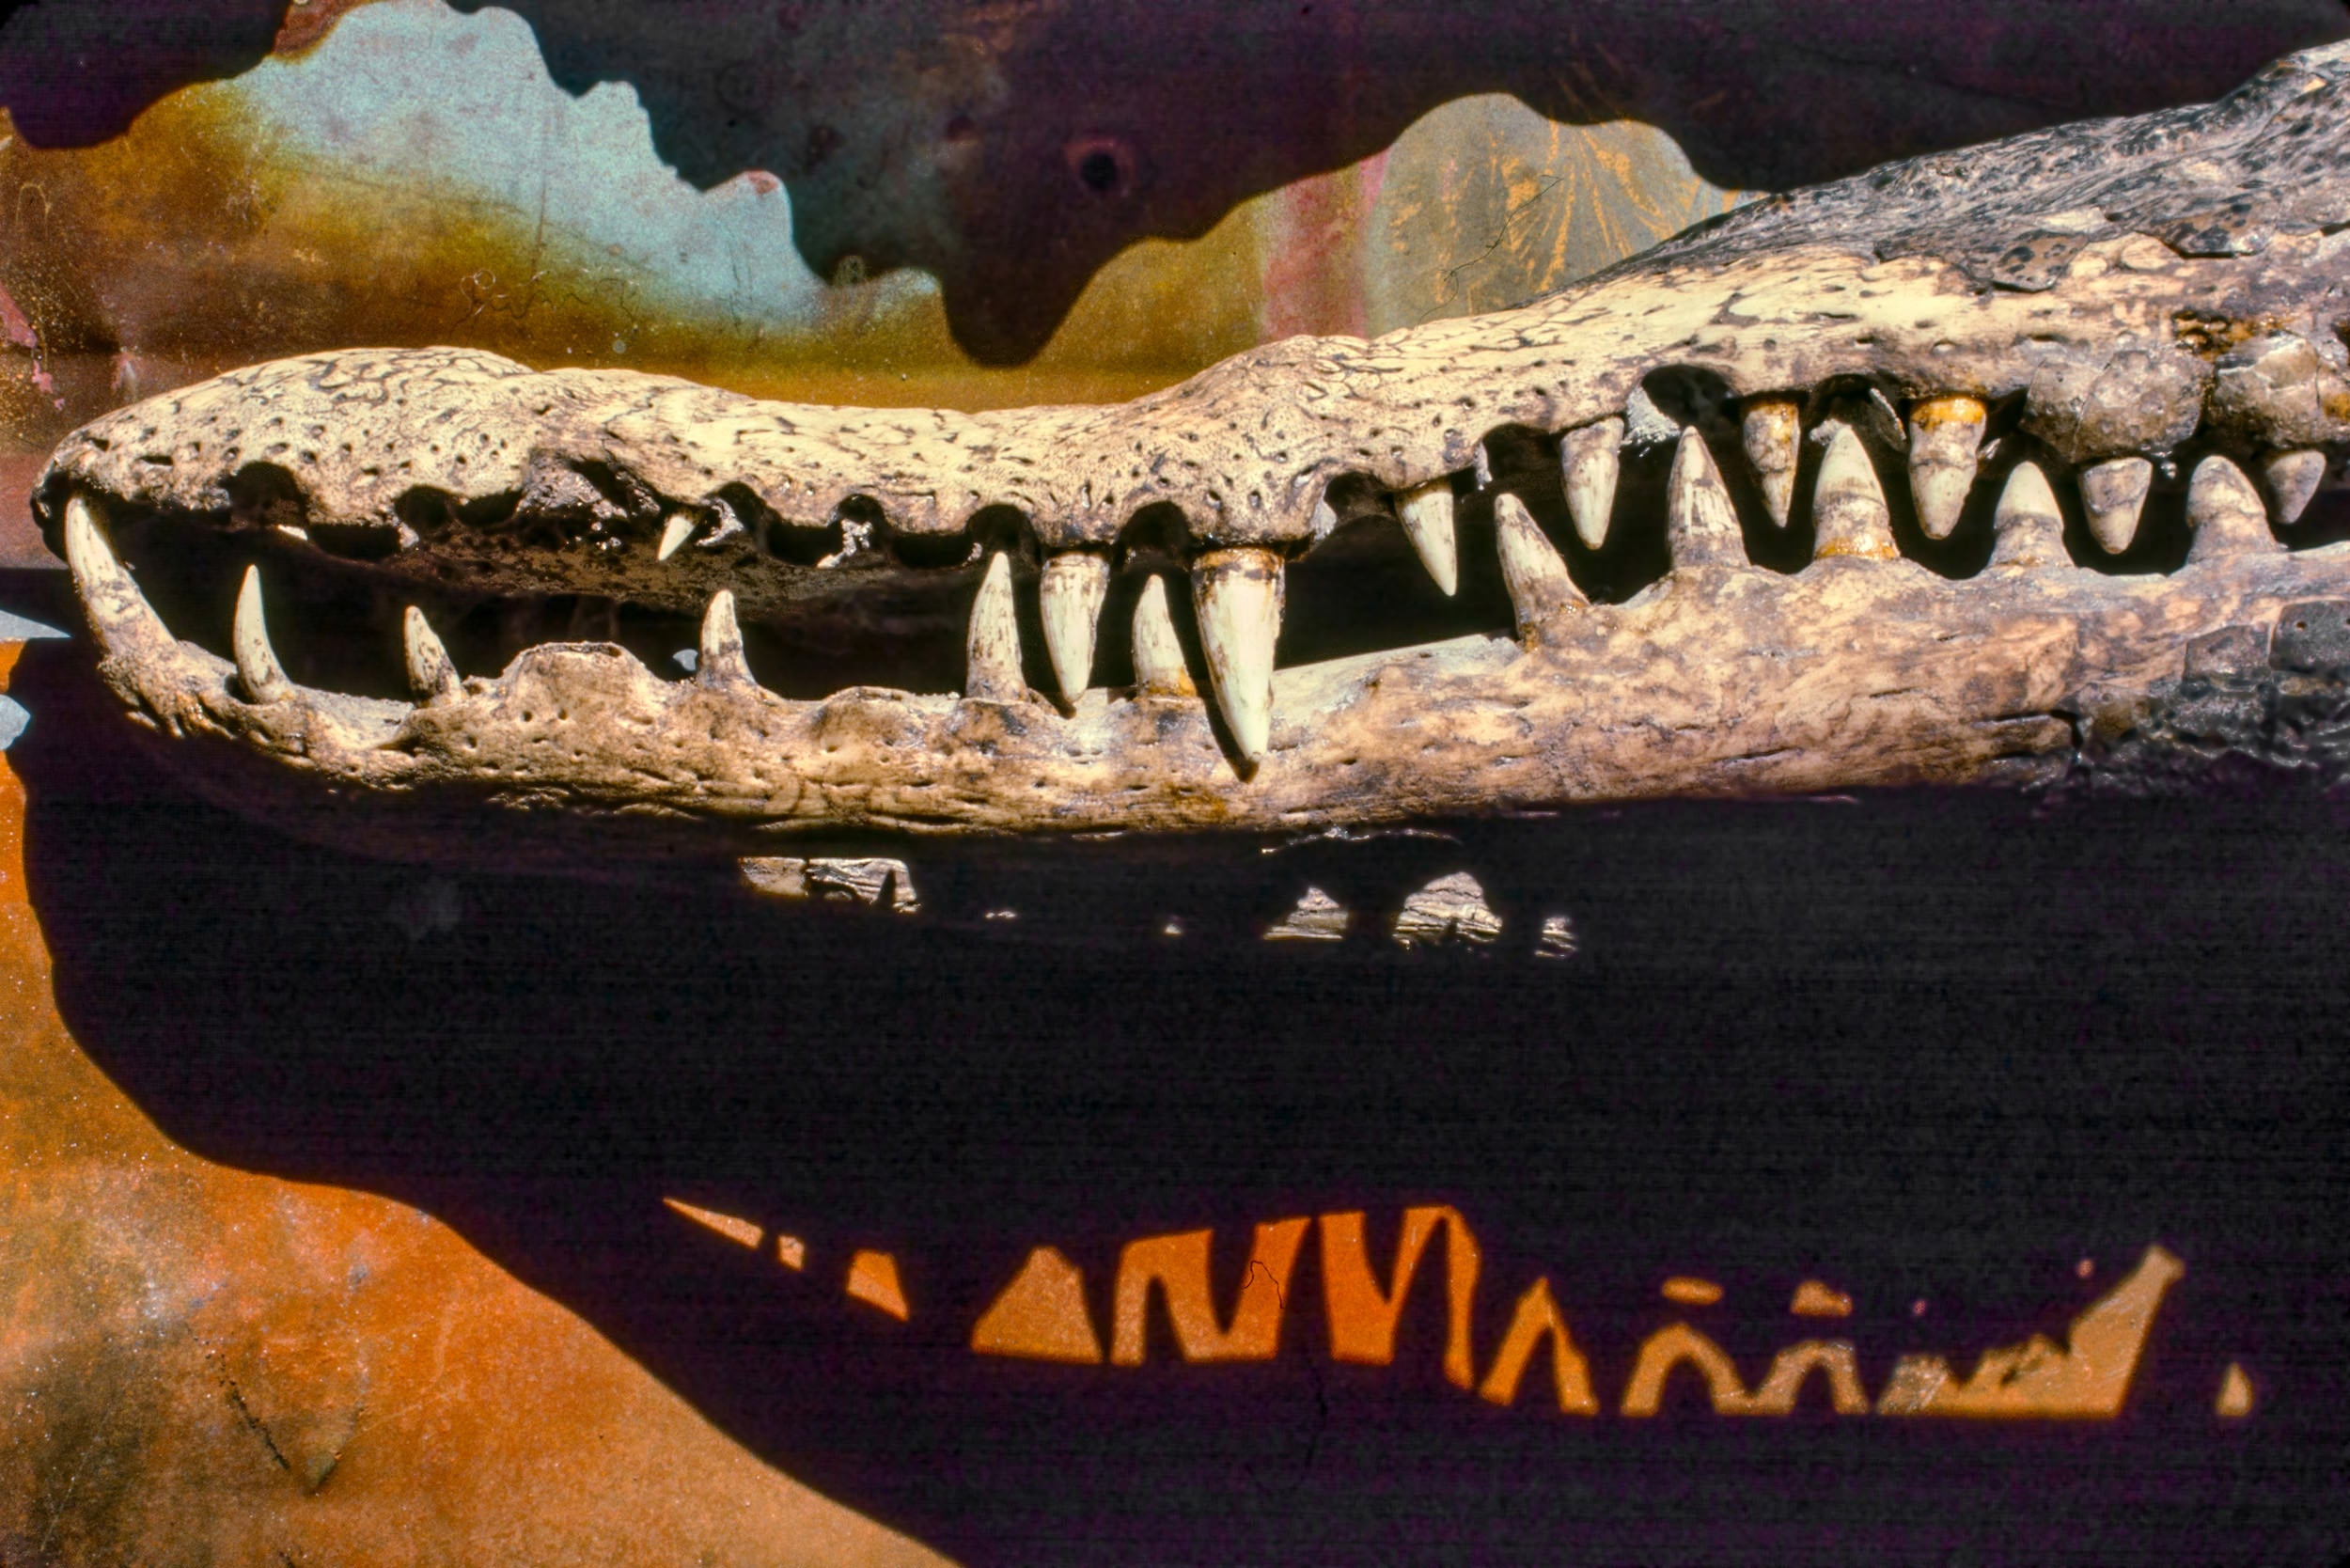 Crocodile jaw and shadow of its teeth.